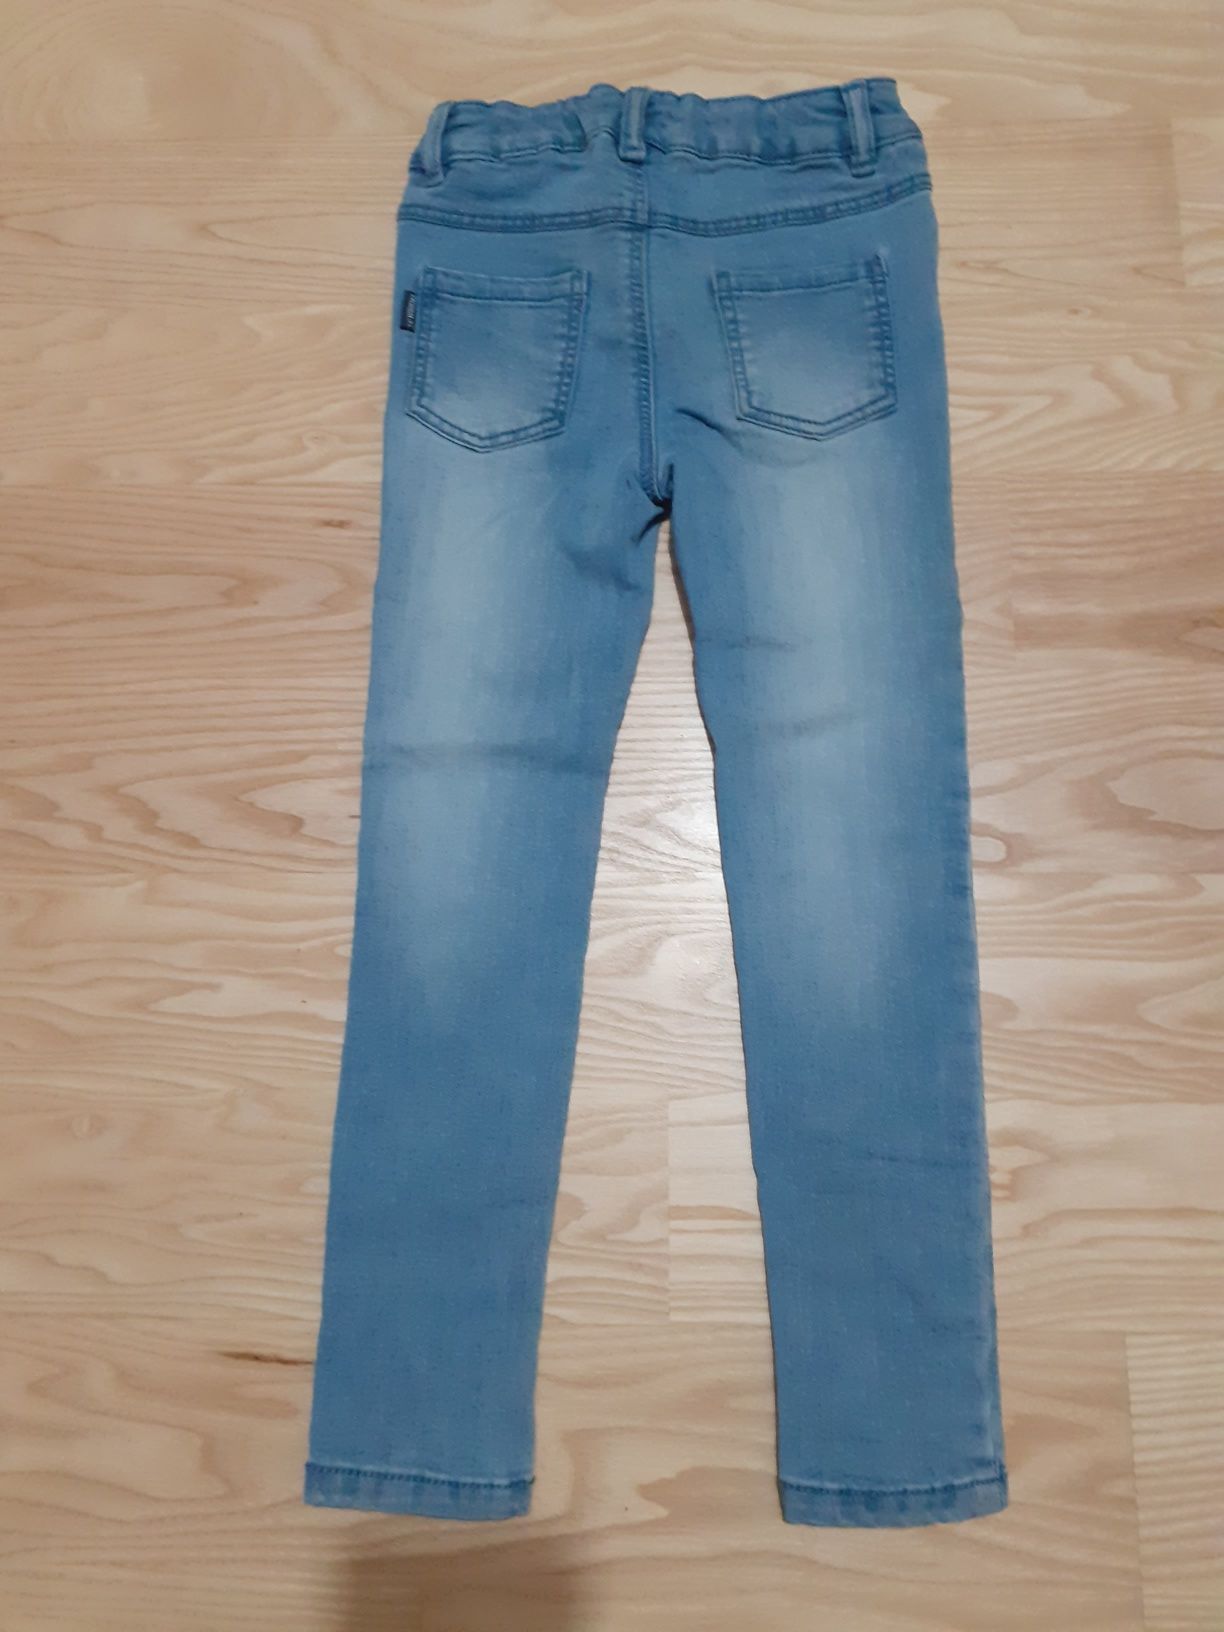 Spodnie jeansowe dziewczęce firmy LC WAIKIKI, rozmiar 110/116